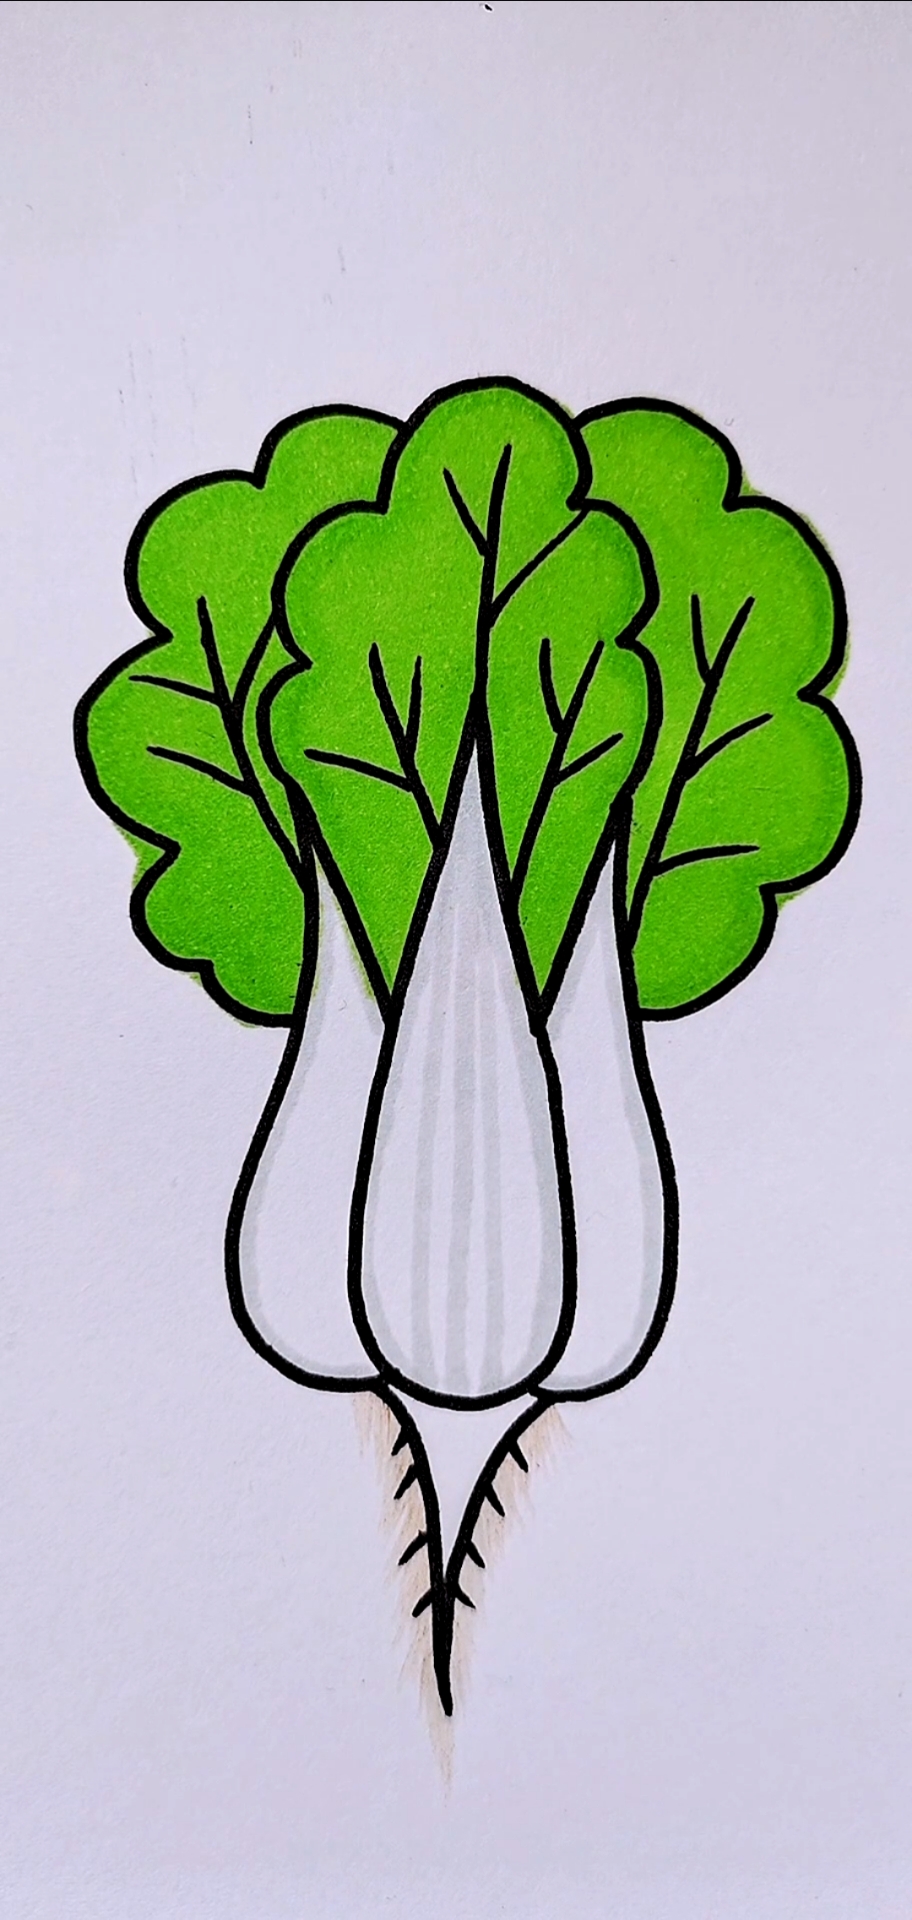 大白菜生长过程简笔画图片